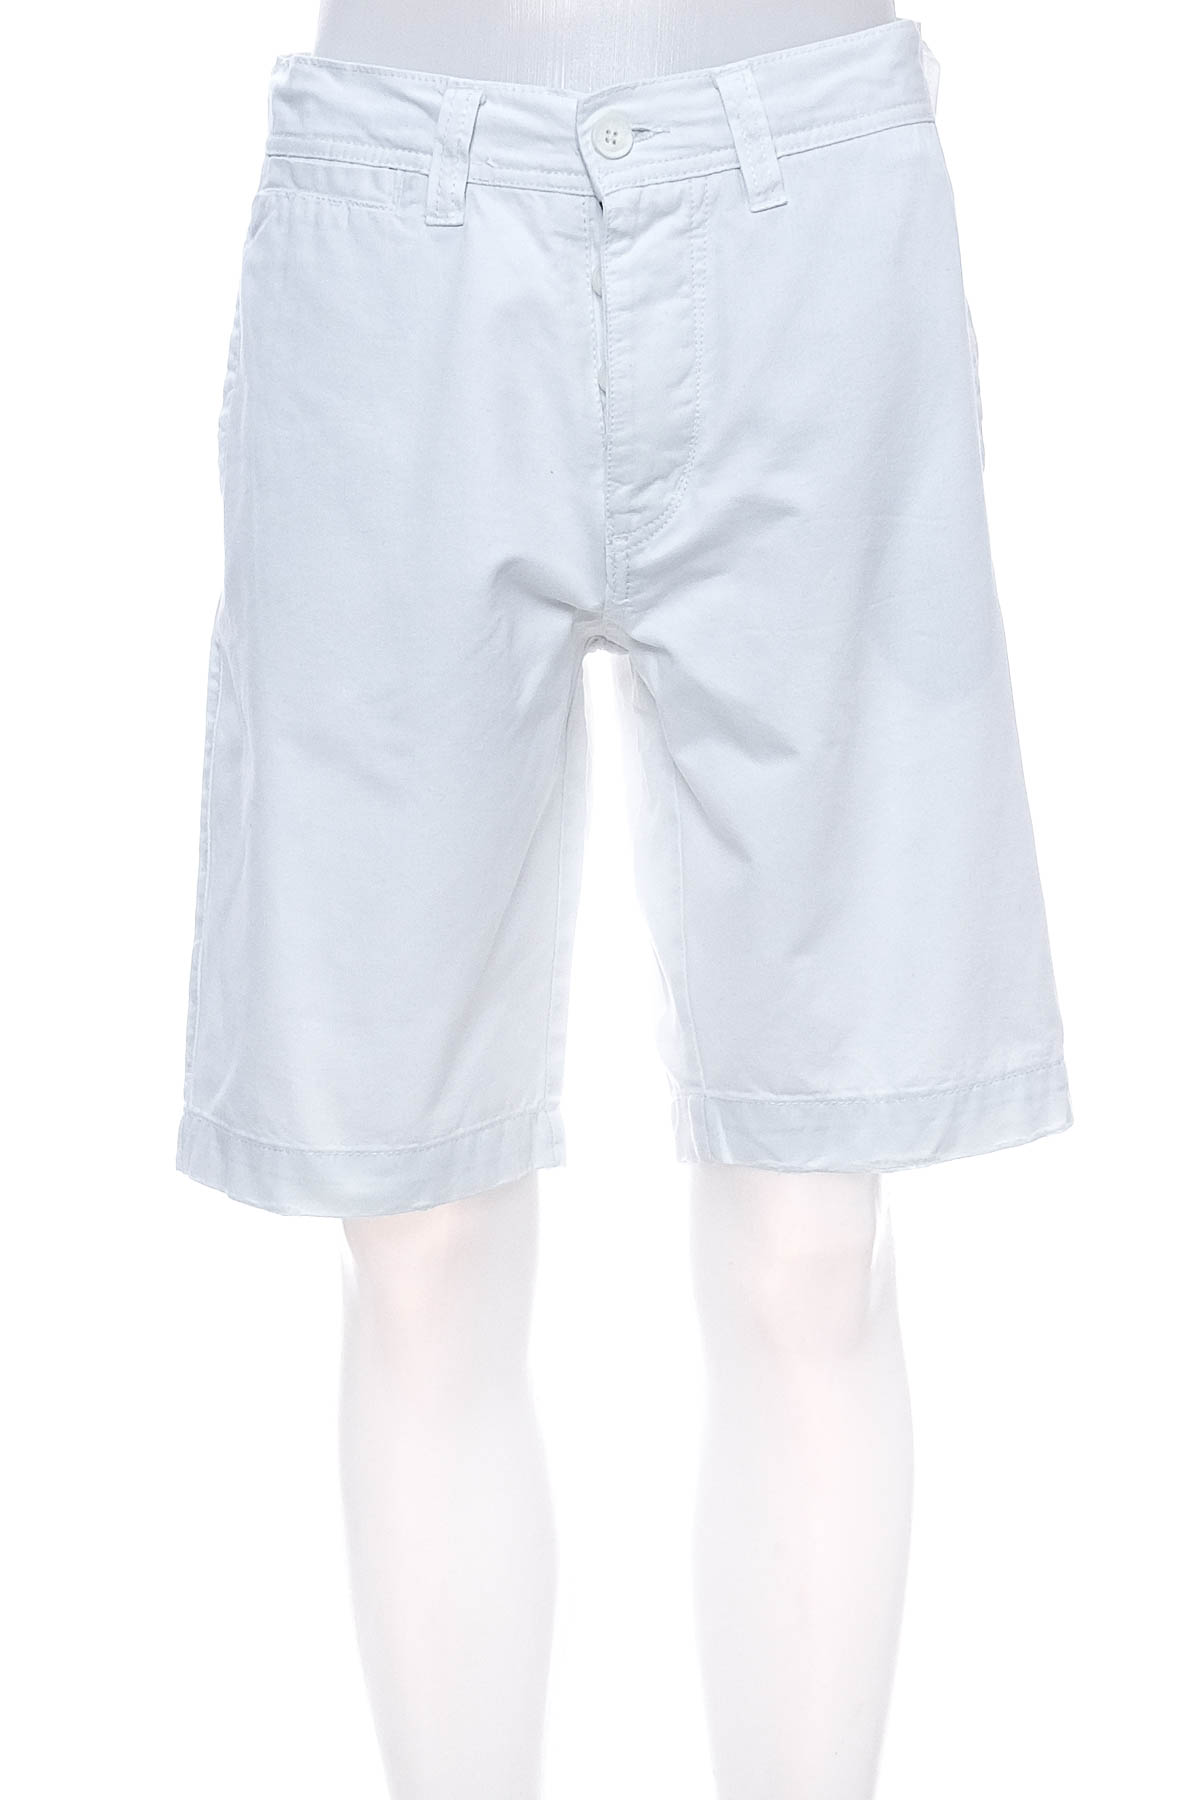 Men's shorts - Alcott - 0